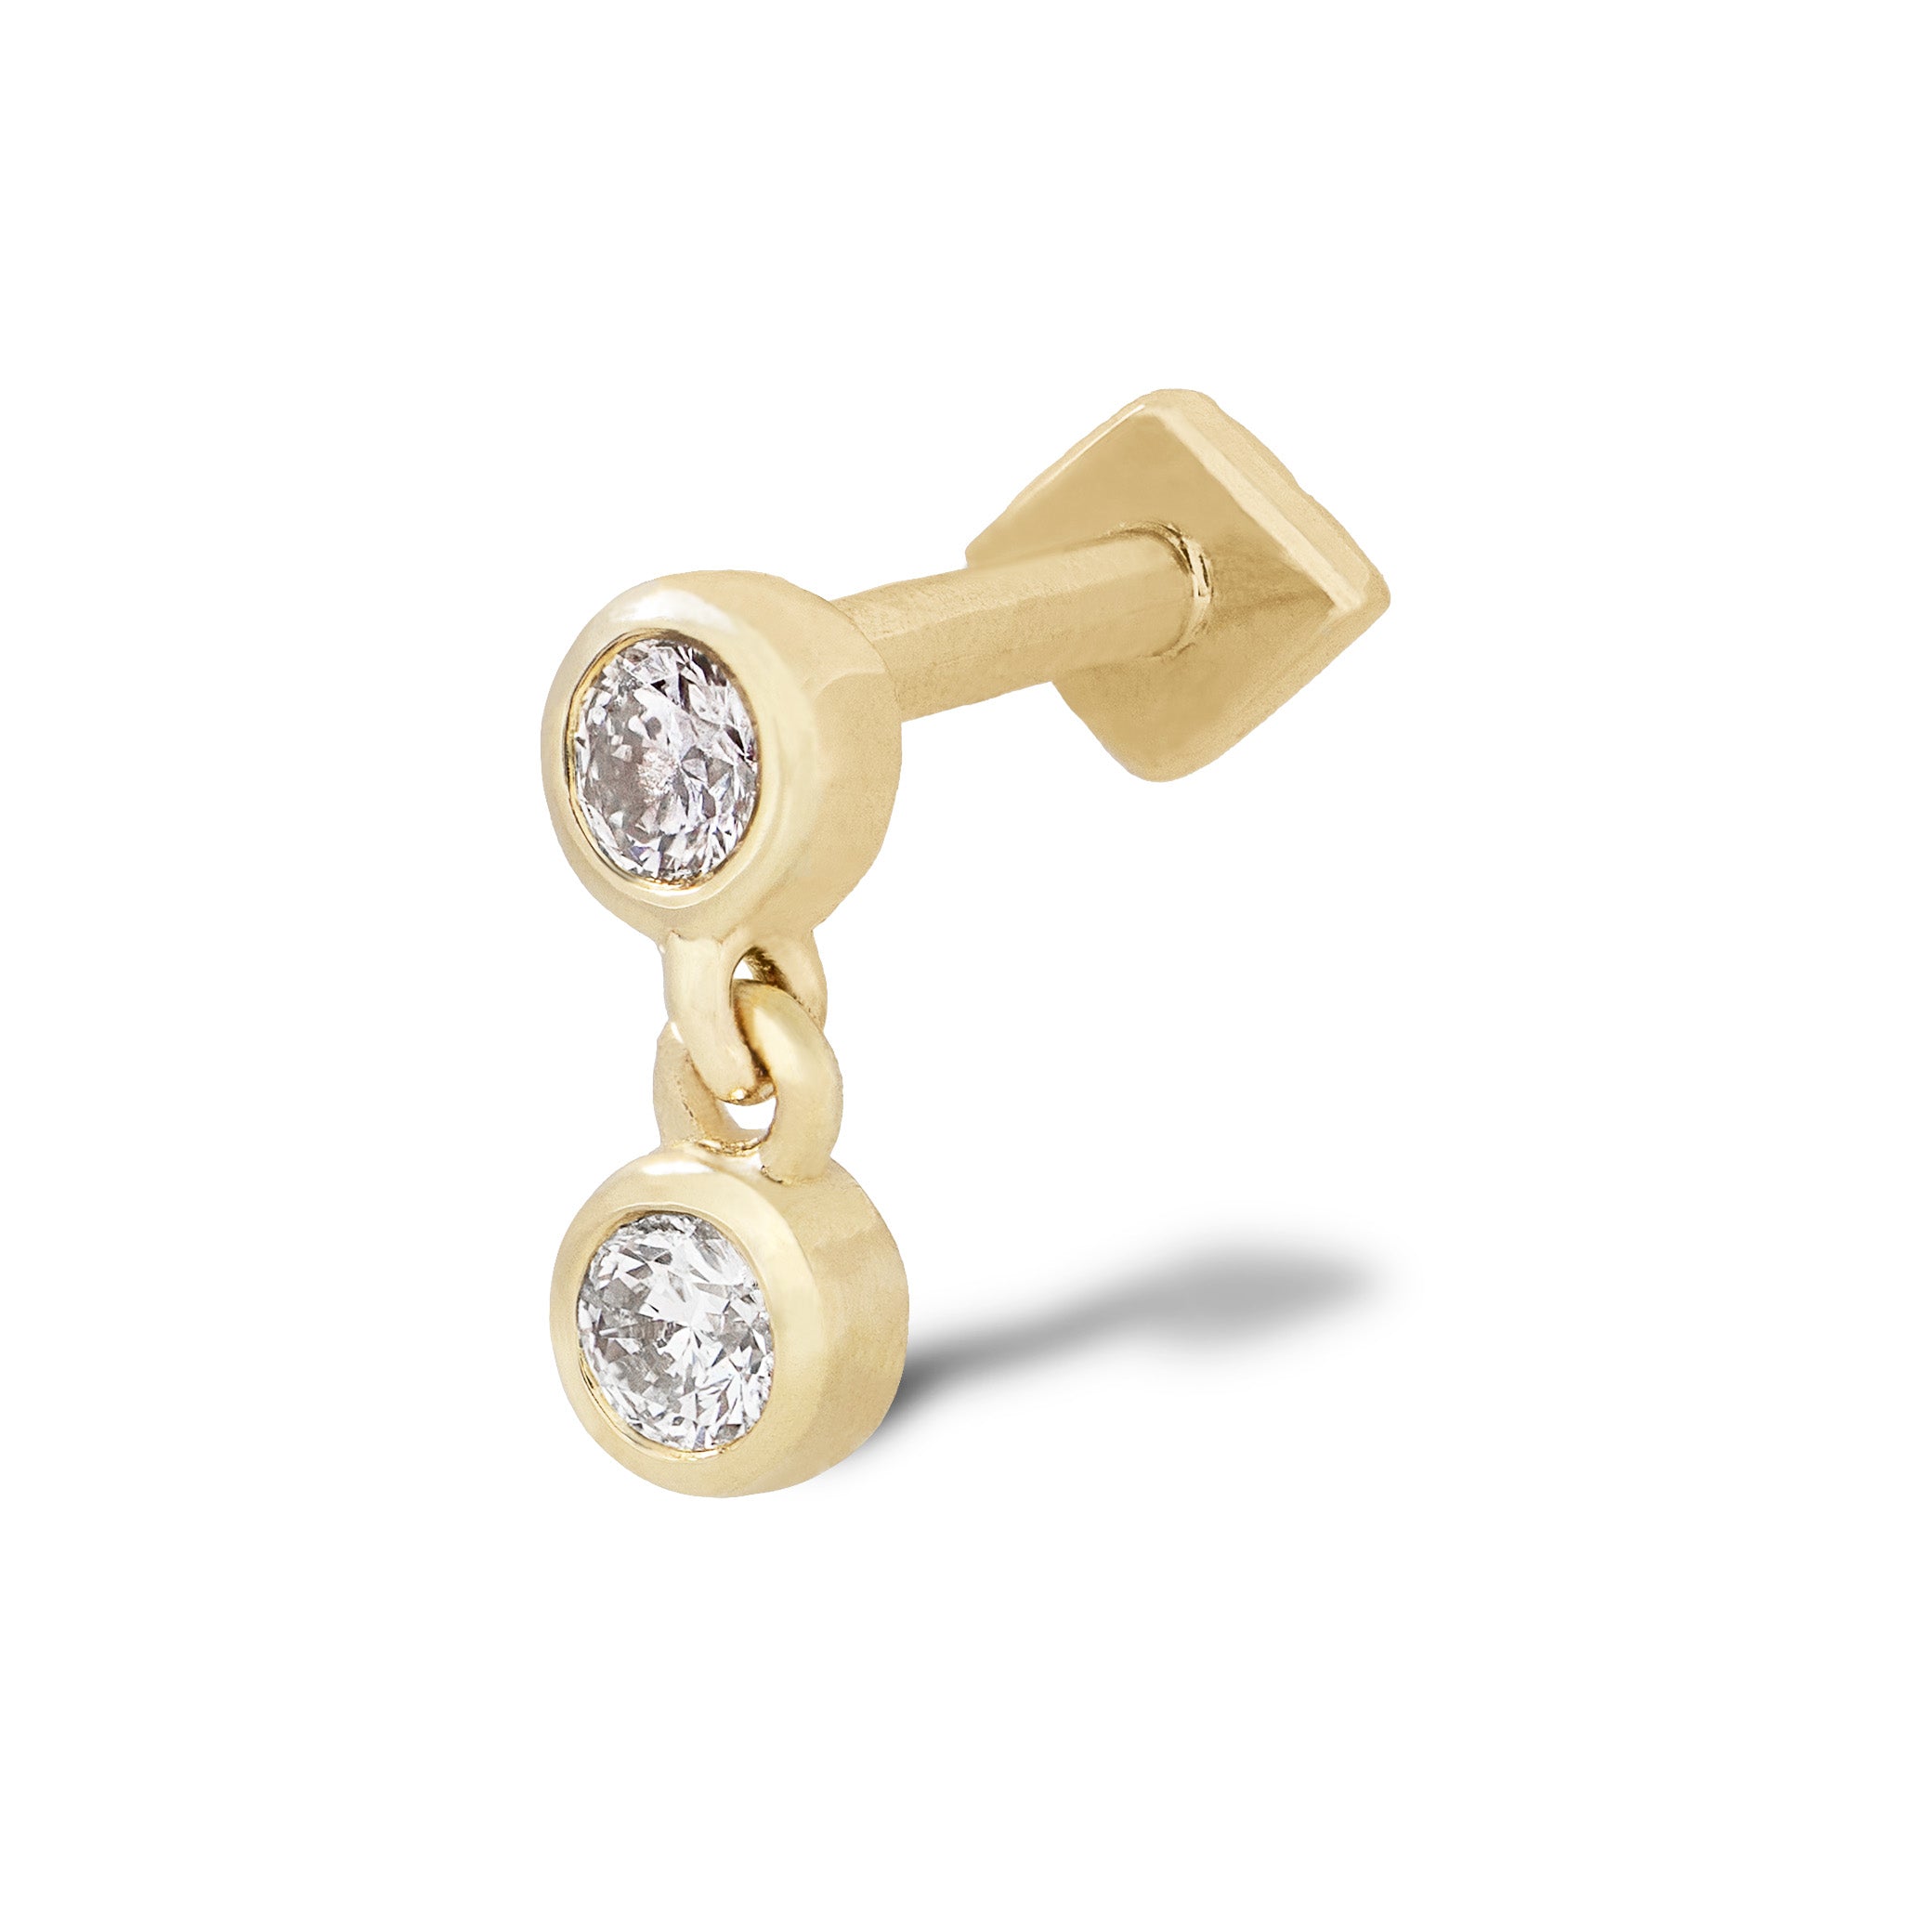 Timeless Pair Of Long Dazzling Diamond Earrings In Rose Gold By Lagu Bandhu  - Lagu Bandhu